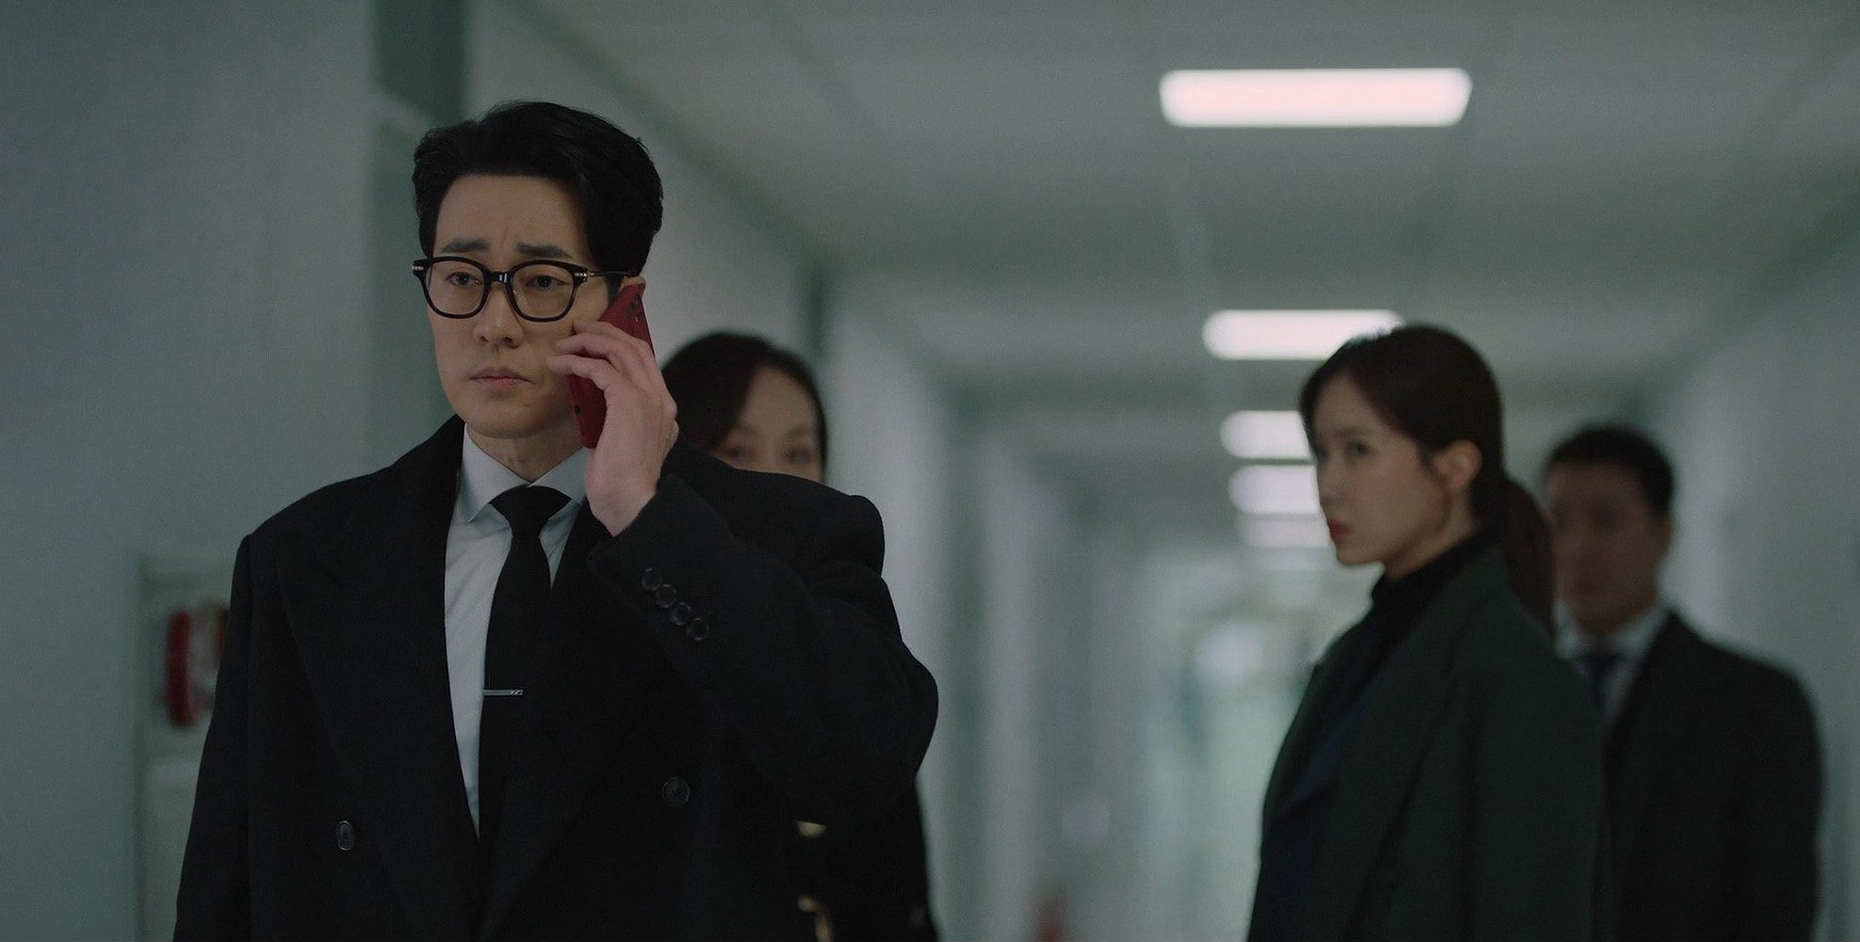 Bác sĩ luật sư: So Ji Sub chung chiến tuyến với bạn gái cũ, lạnh người trước sự nhẫn tâm của trùm phản diện - Ảnh 1.